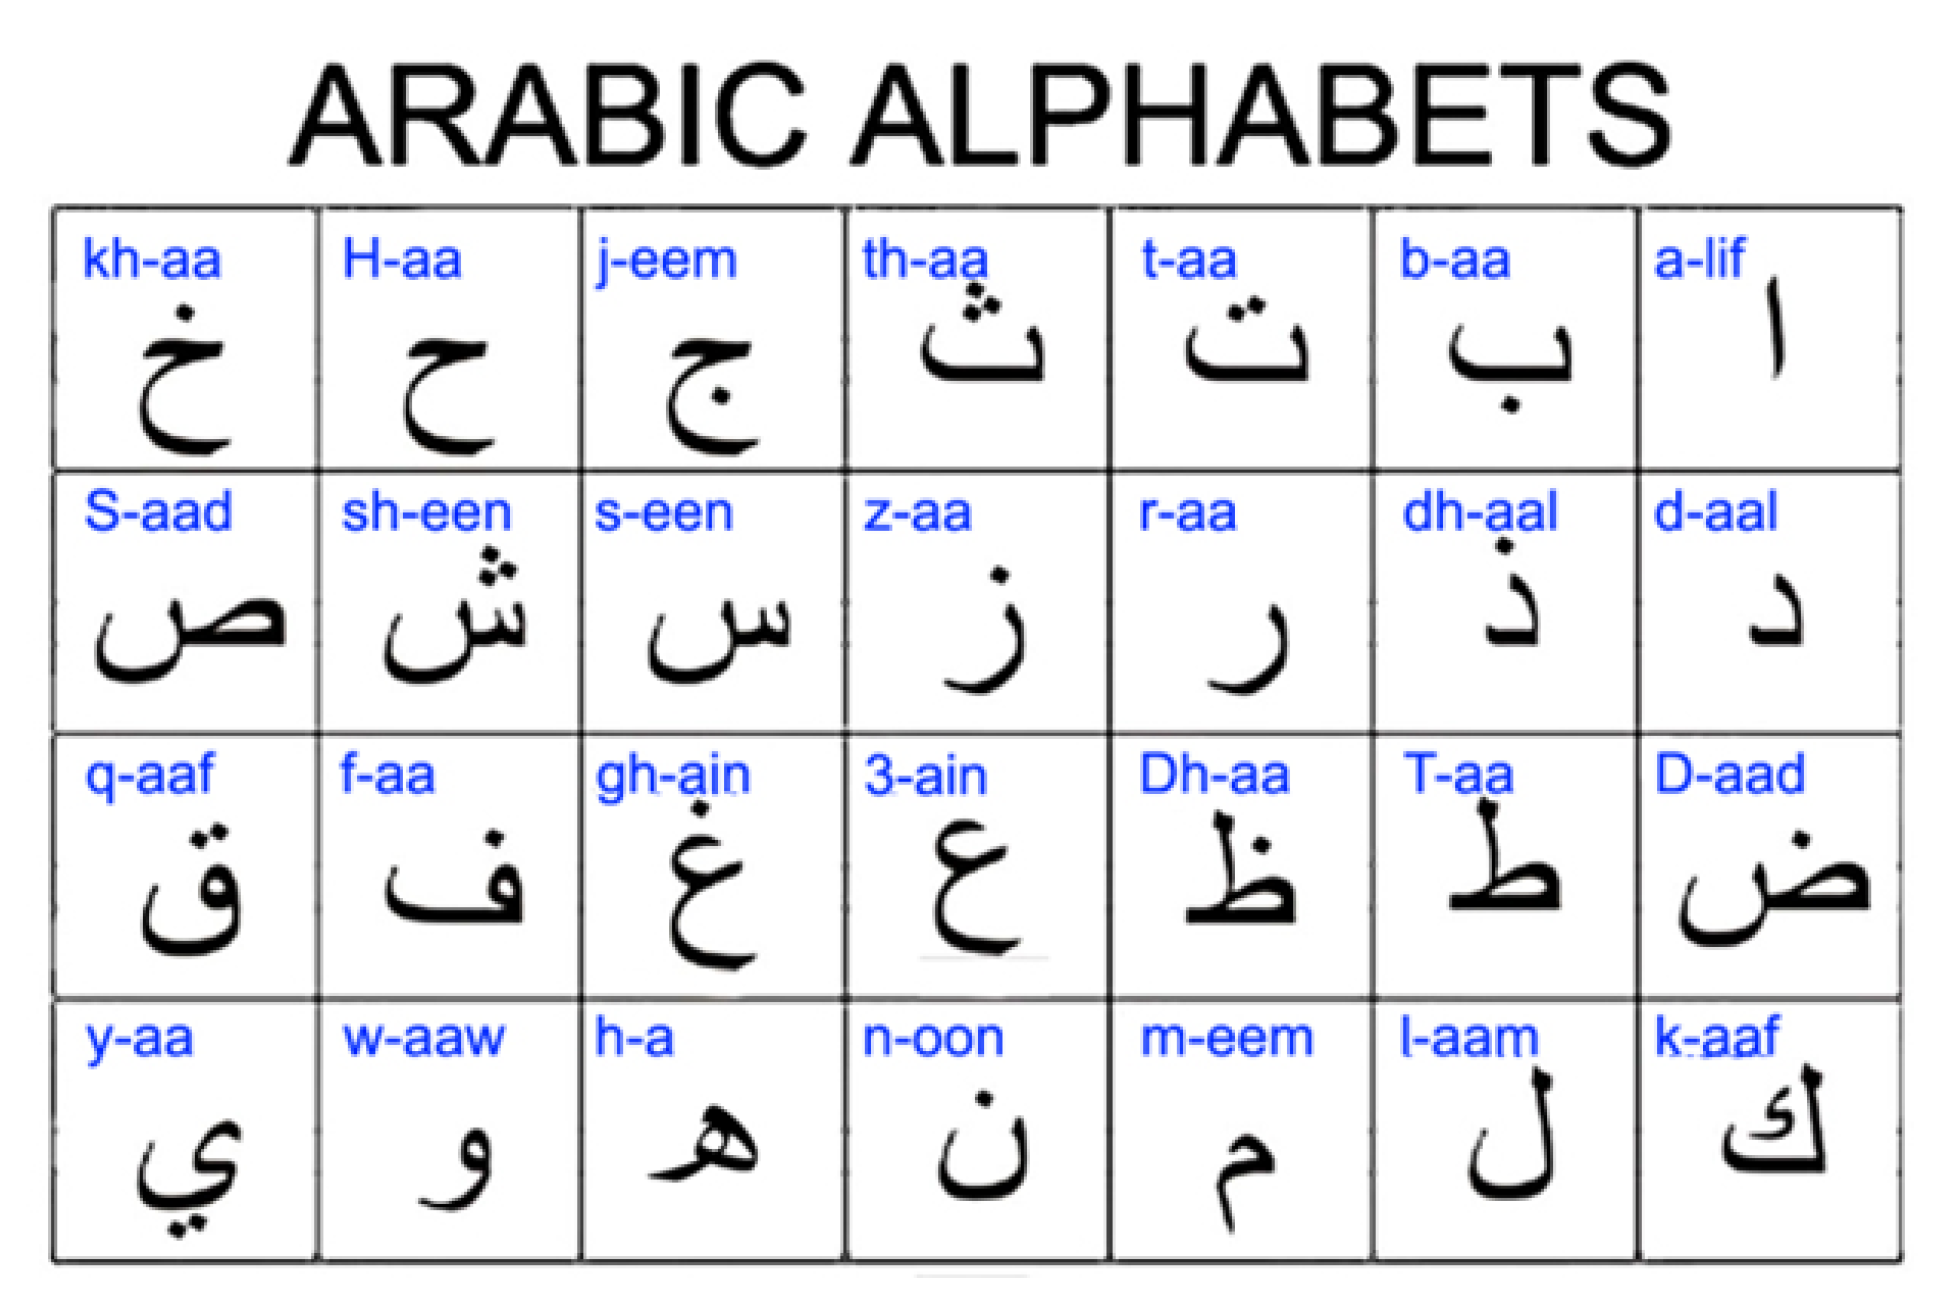 Русский язык арабскими буквами. Арабские буквы алфавит с переводом на русский. Таблица алфавита арабского языка. Арабский алфавит для начинающих с нуля. Арабский алфавит с транскрипцией на арабском языке.